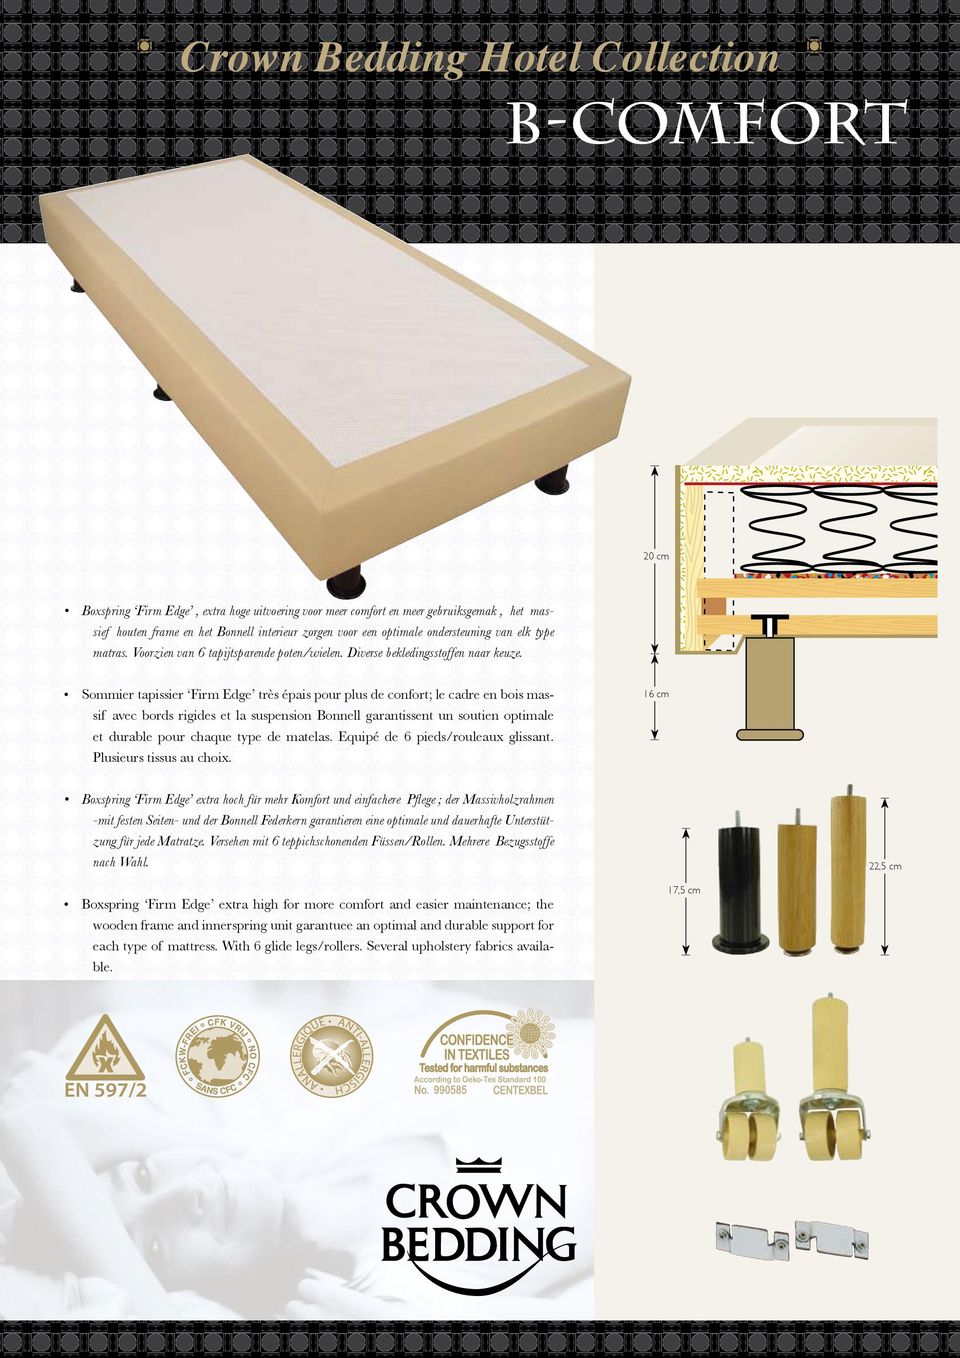 Sommier tapissier Firm Edge très épais pour plus de confort; le cadre en bois massif avec bords rigides et la suspension Bonnell garantissent un soutien optimale et durable pour chaque type de